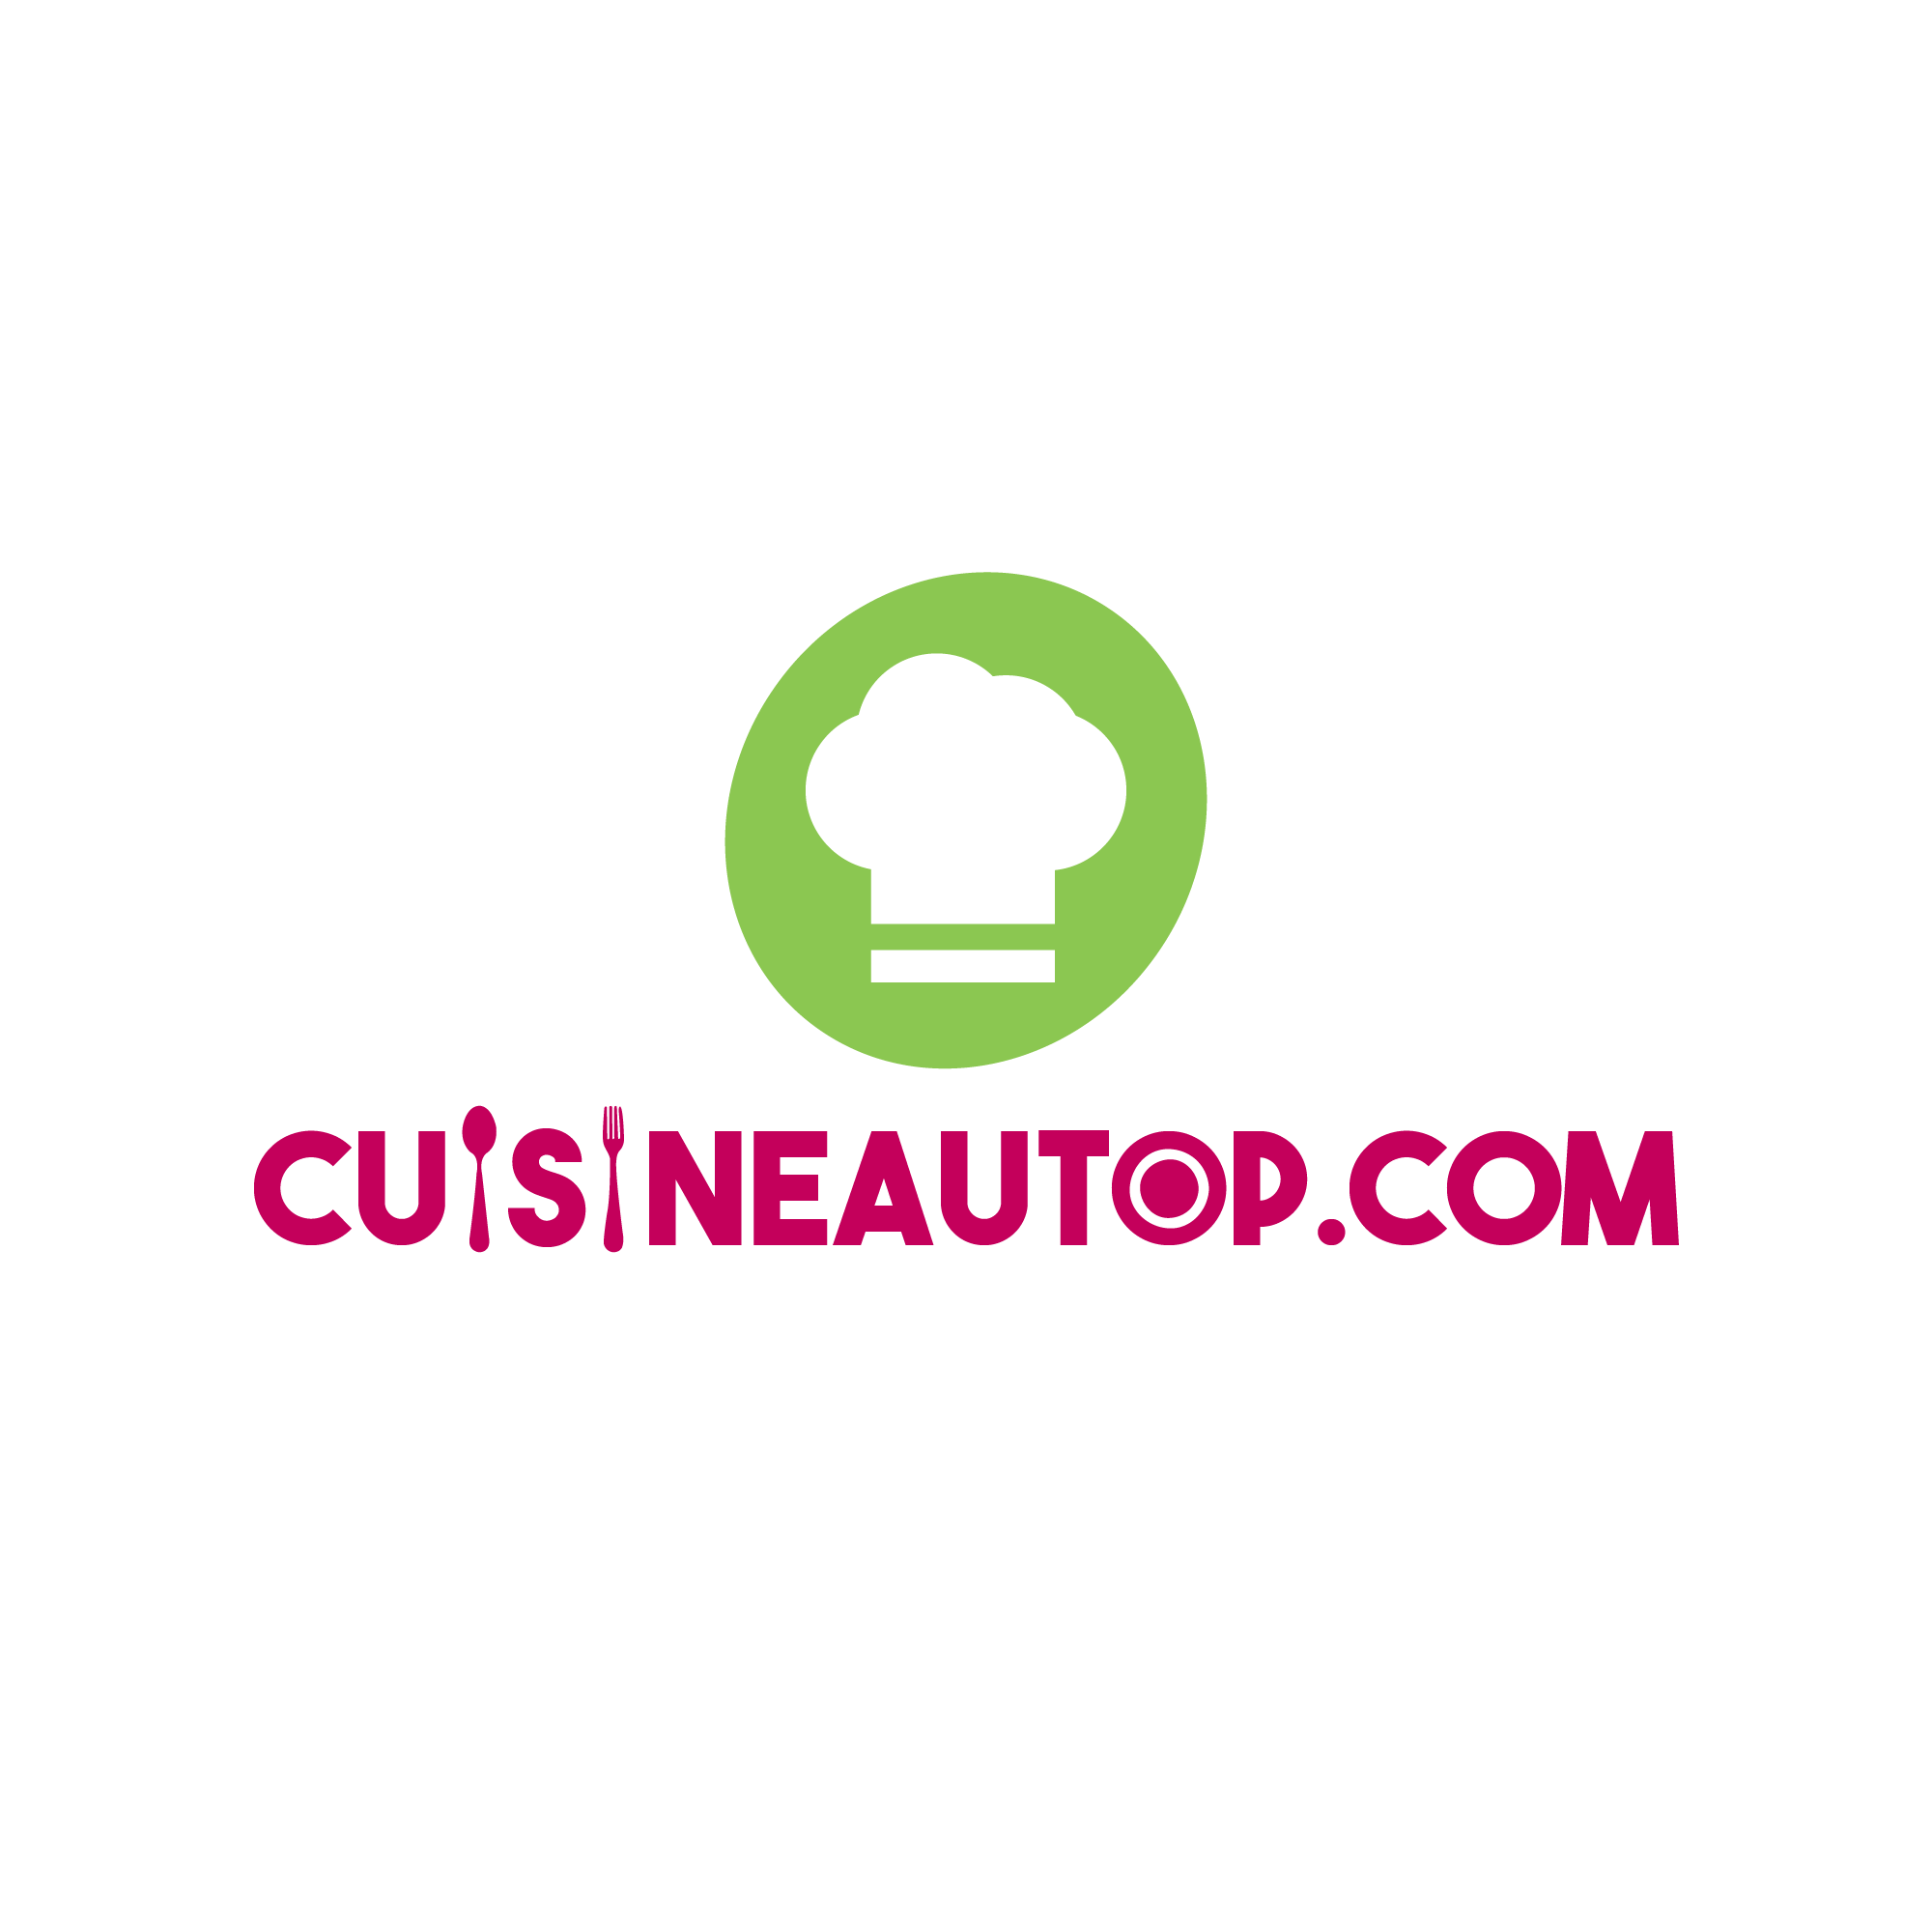 cuisineautop-com-logo-01.png